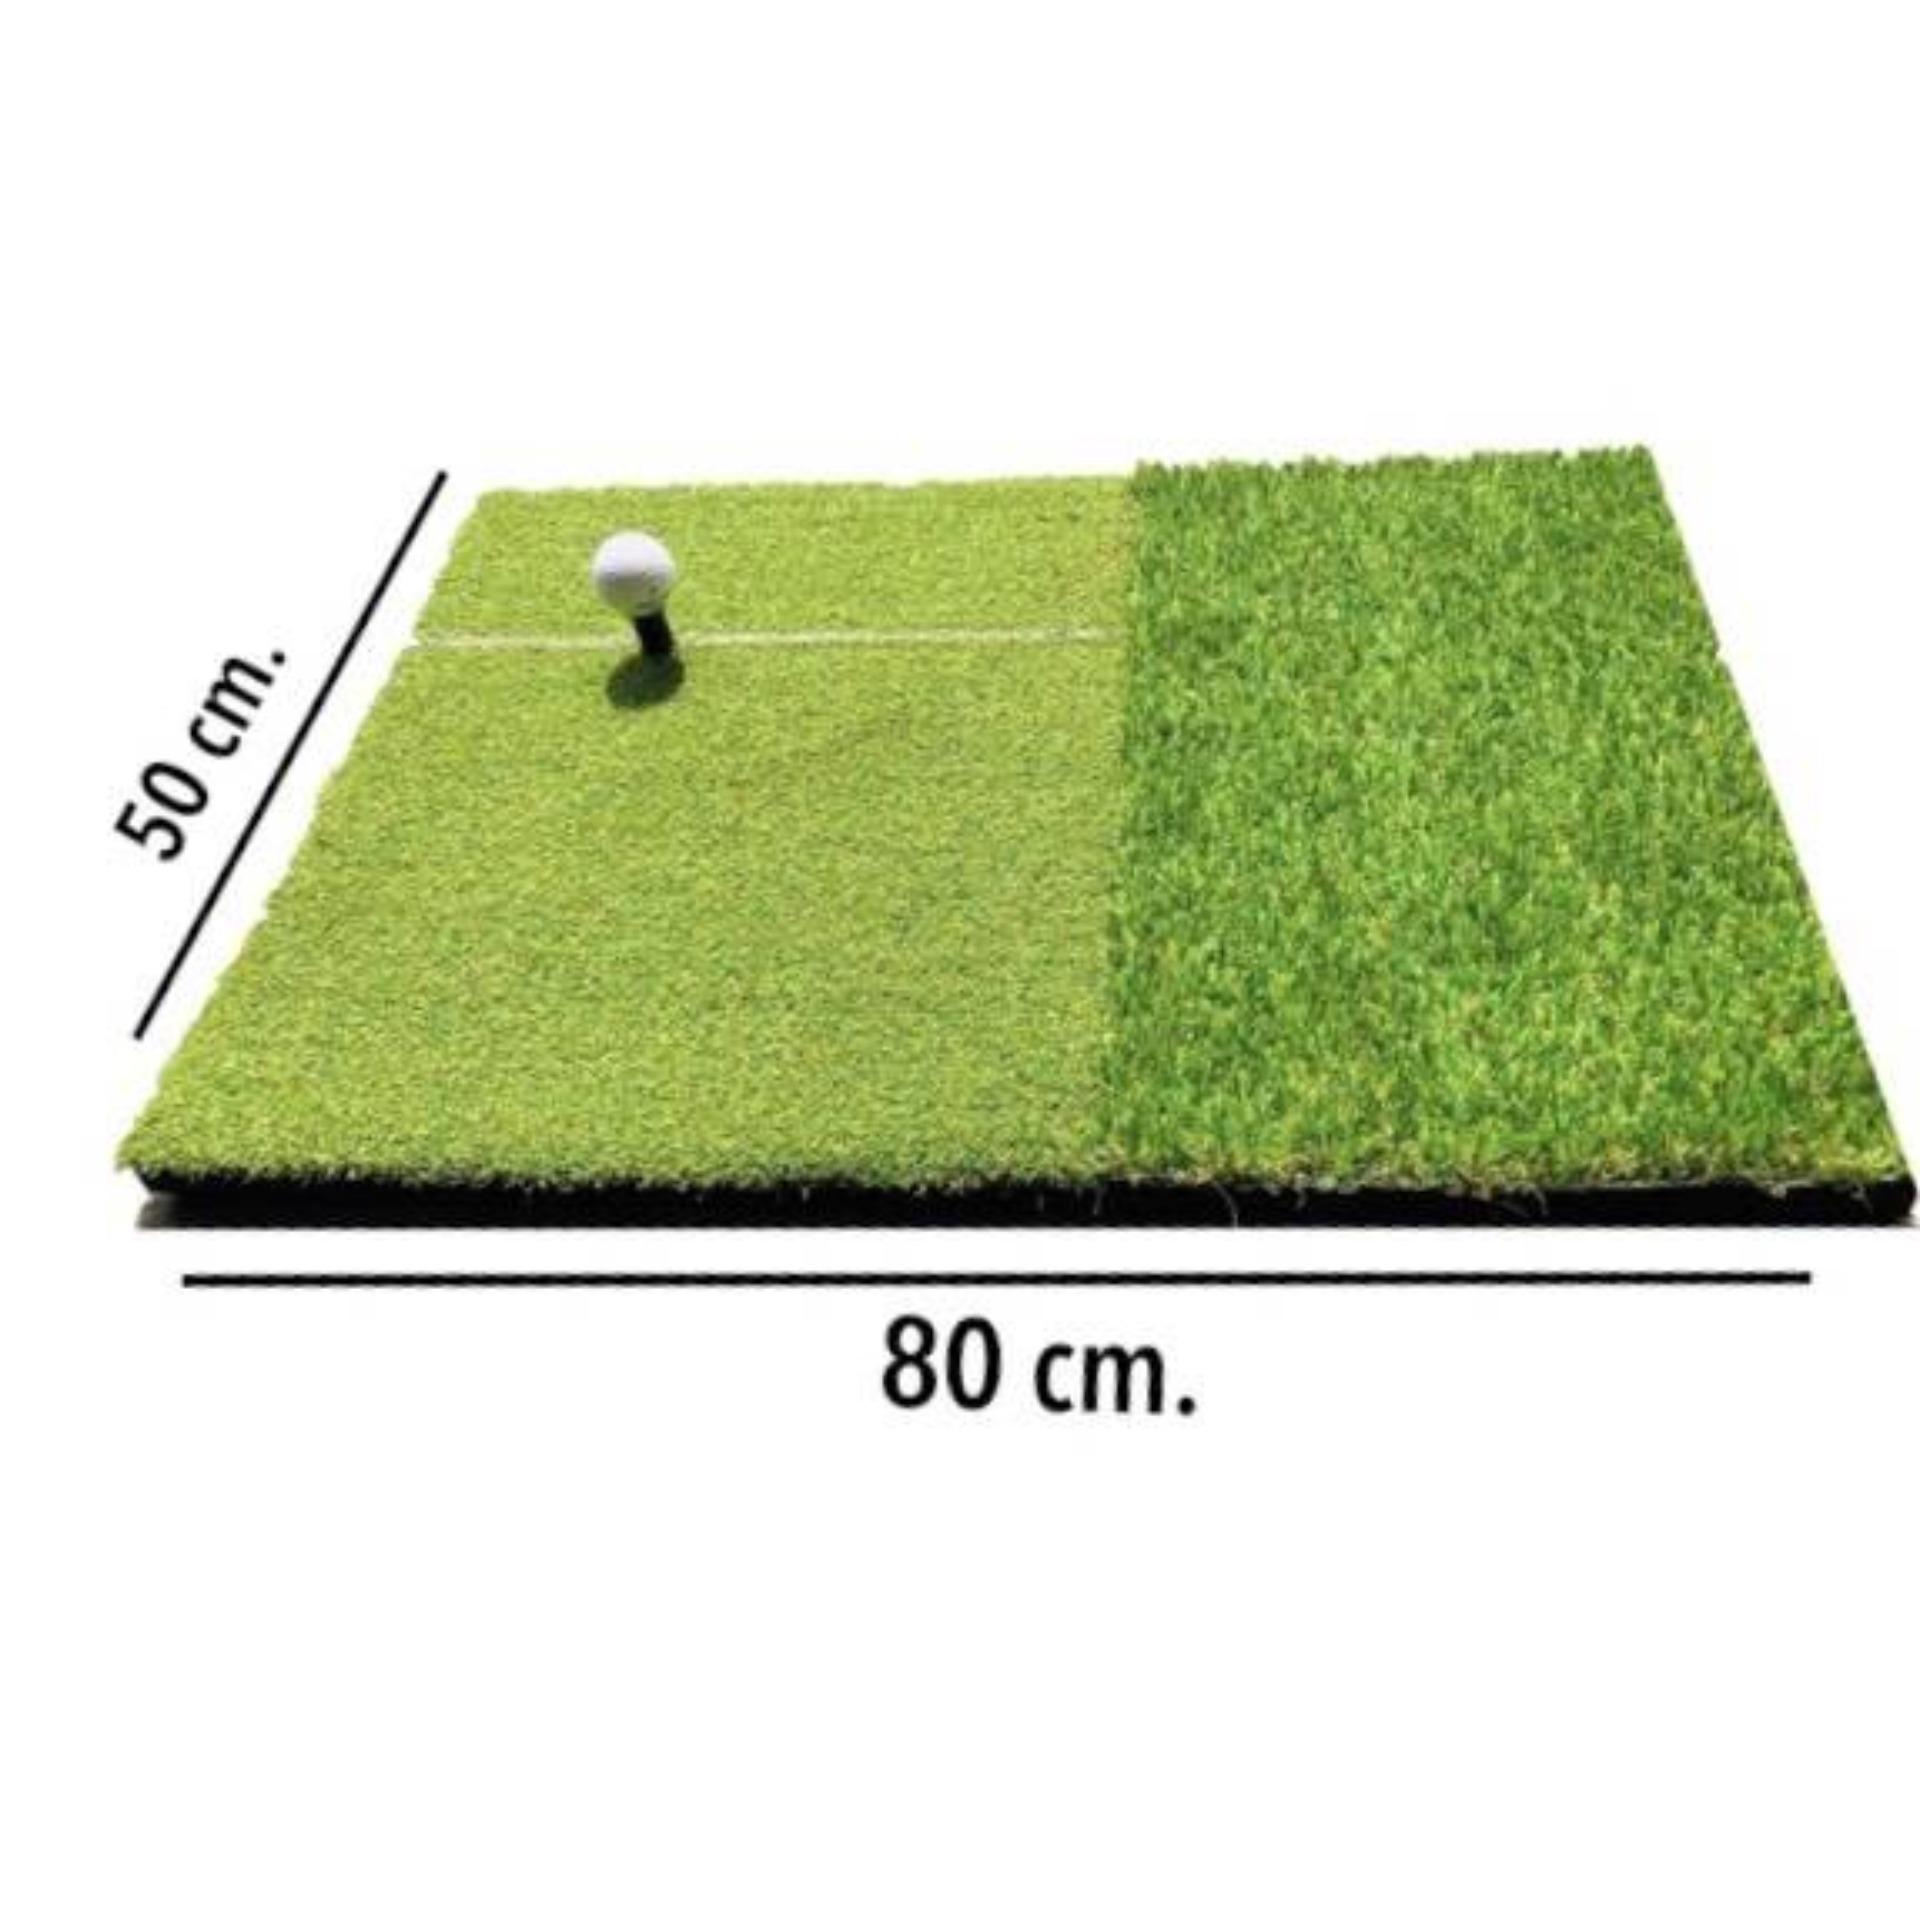 50x80 cm พรมหญ้าเทียมซ้อมกอล์ฟหญ้าเทียม 2 ระดับขนาด 50x80 ซม.,แผ่นพรมสำหรับซ้อมกอล์ฟ หนา 28 มม.